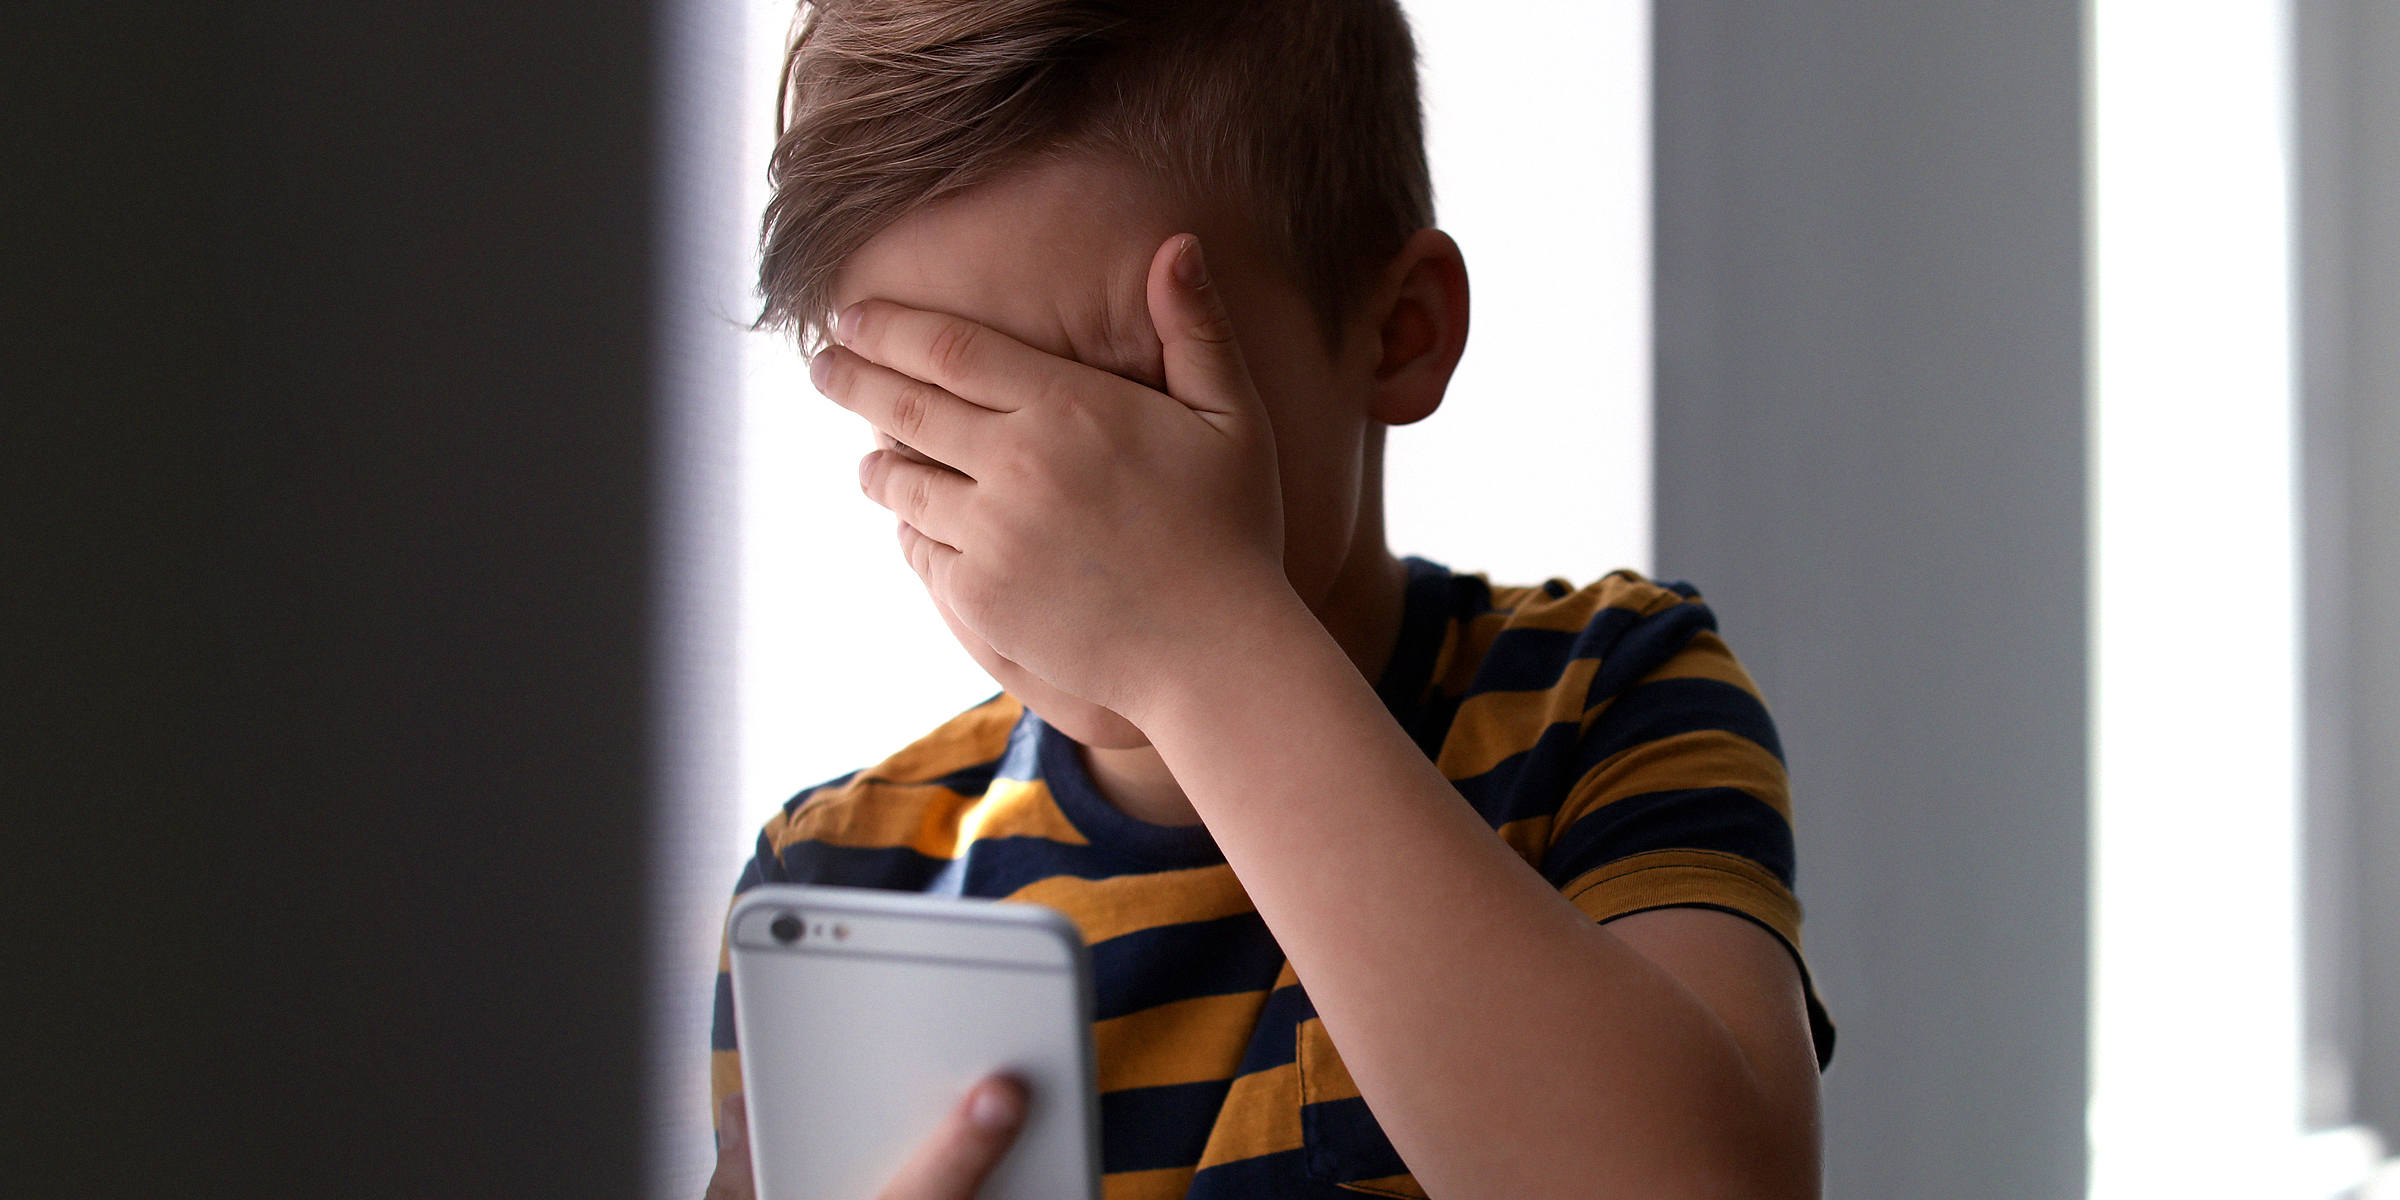 Garçon qui pleure en passant un appel | Source : Shutterstock